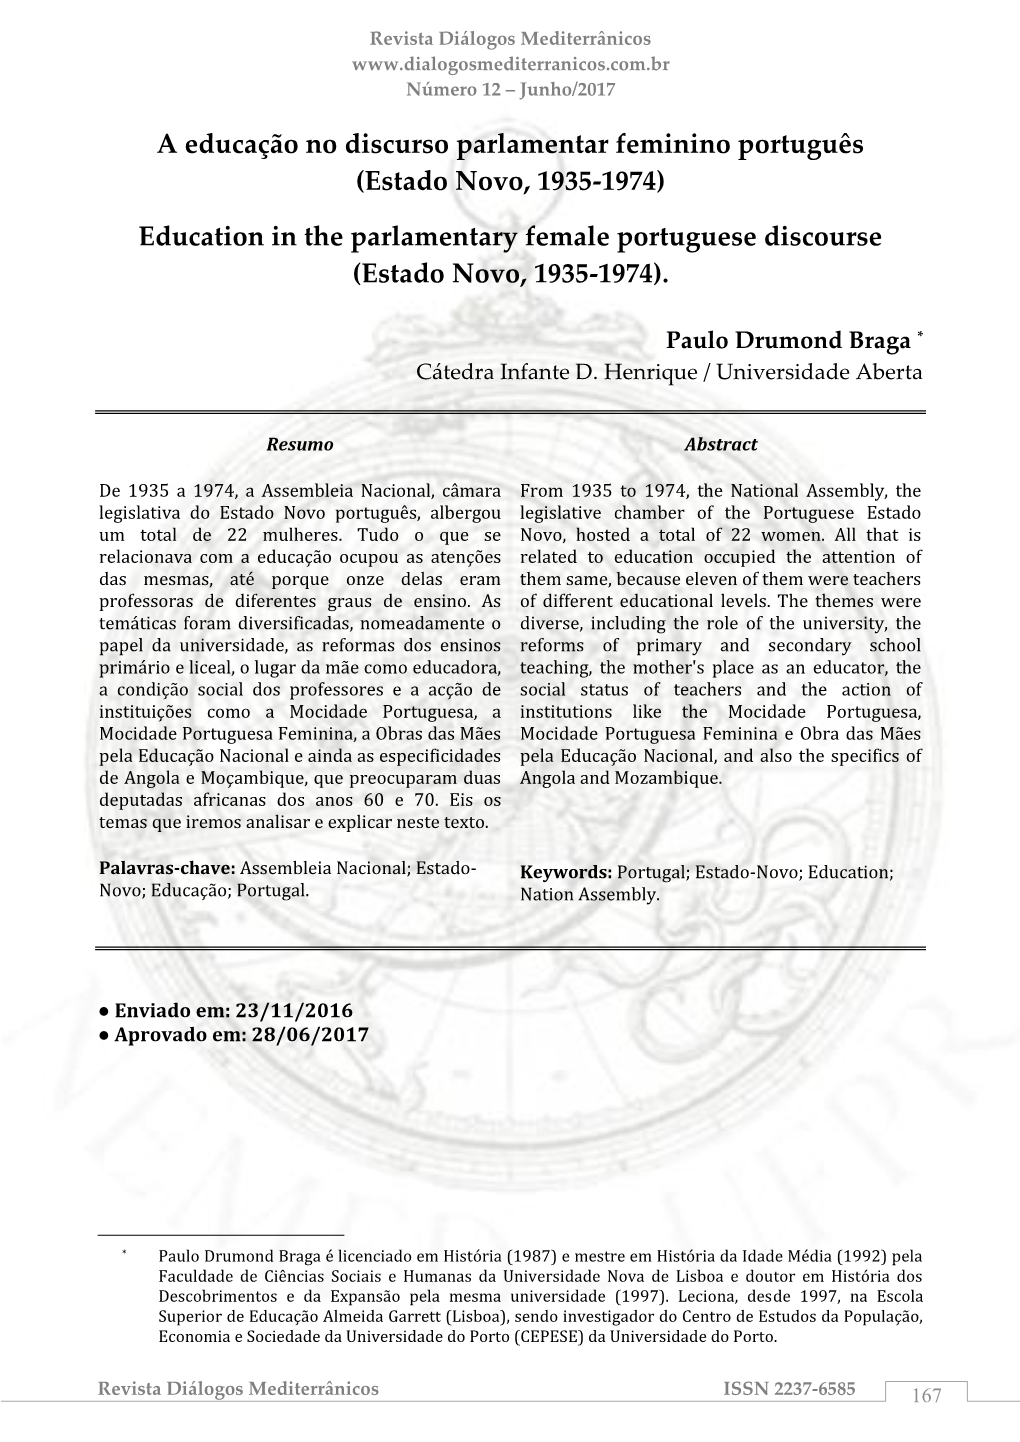 A Educação No Discurso Parlamentar Feminino Português (Estado Novo, 1935-1974)